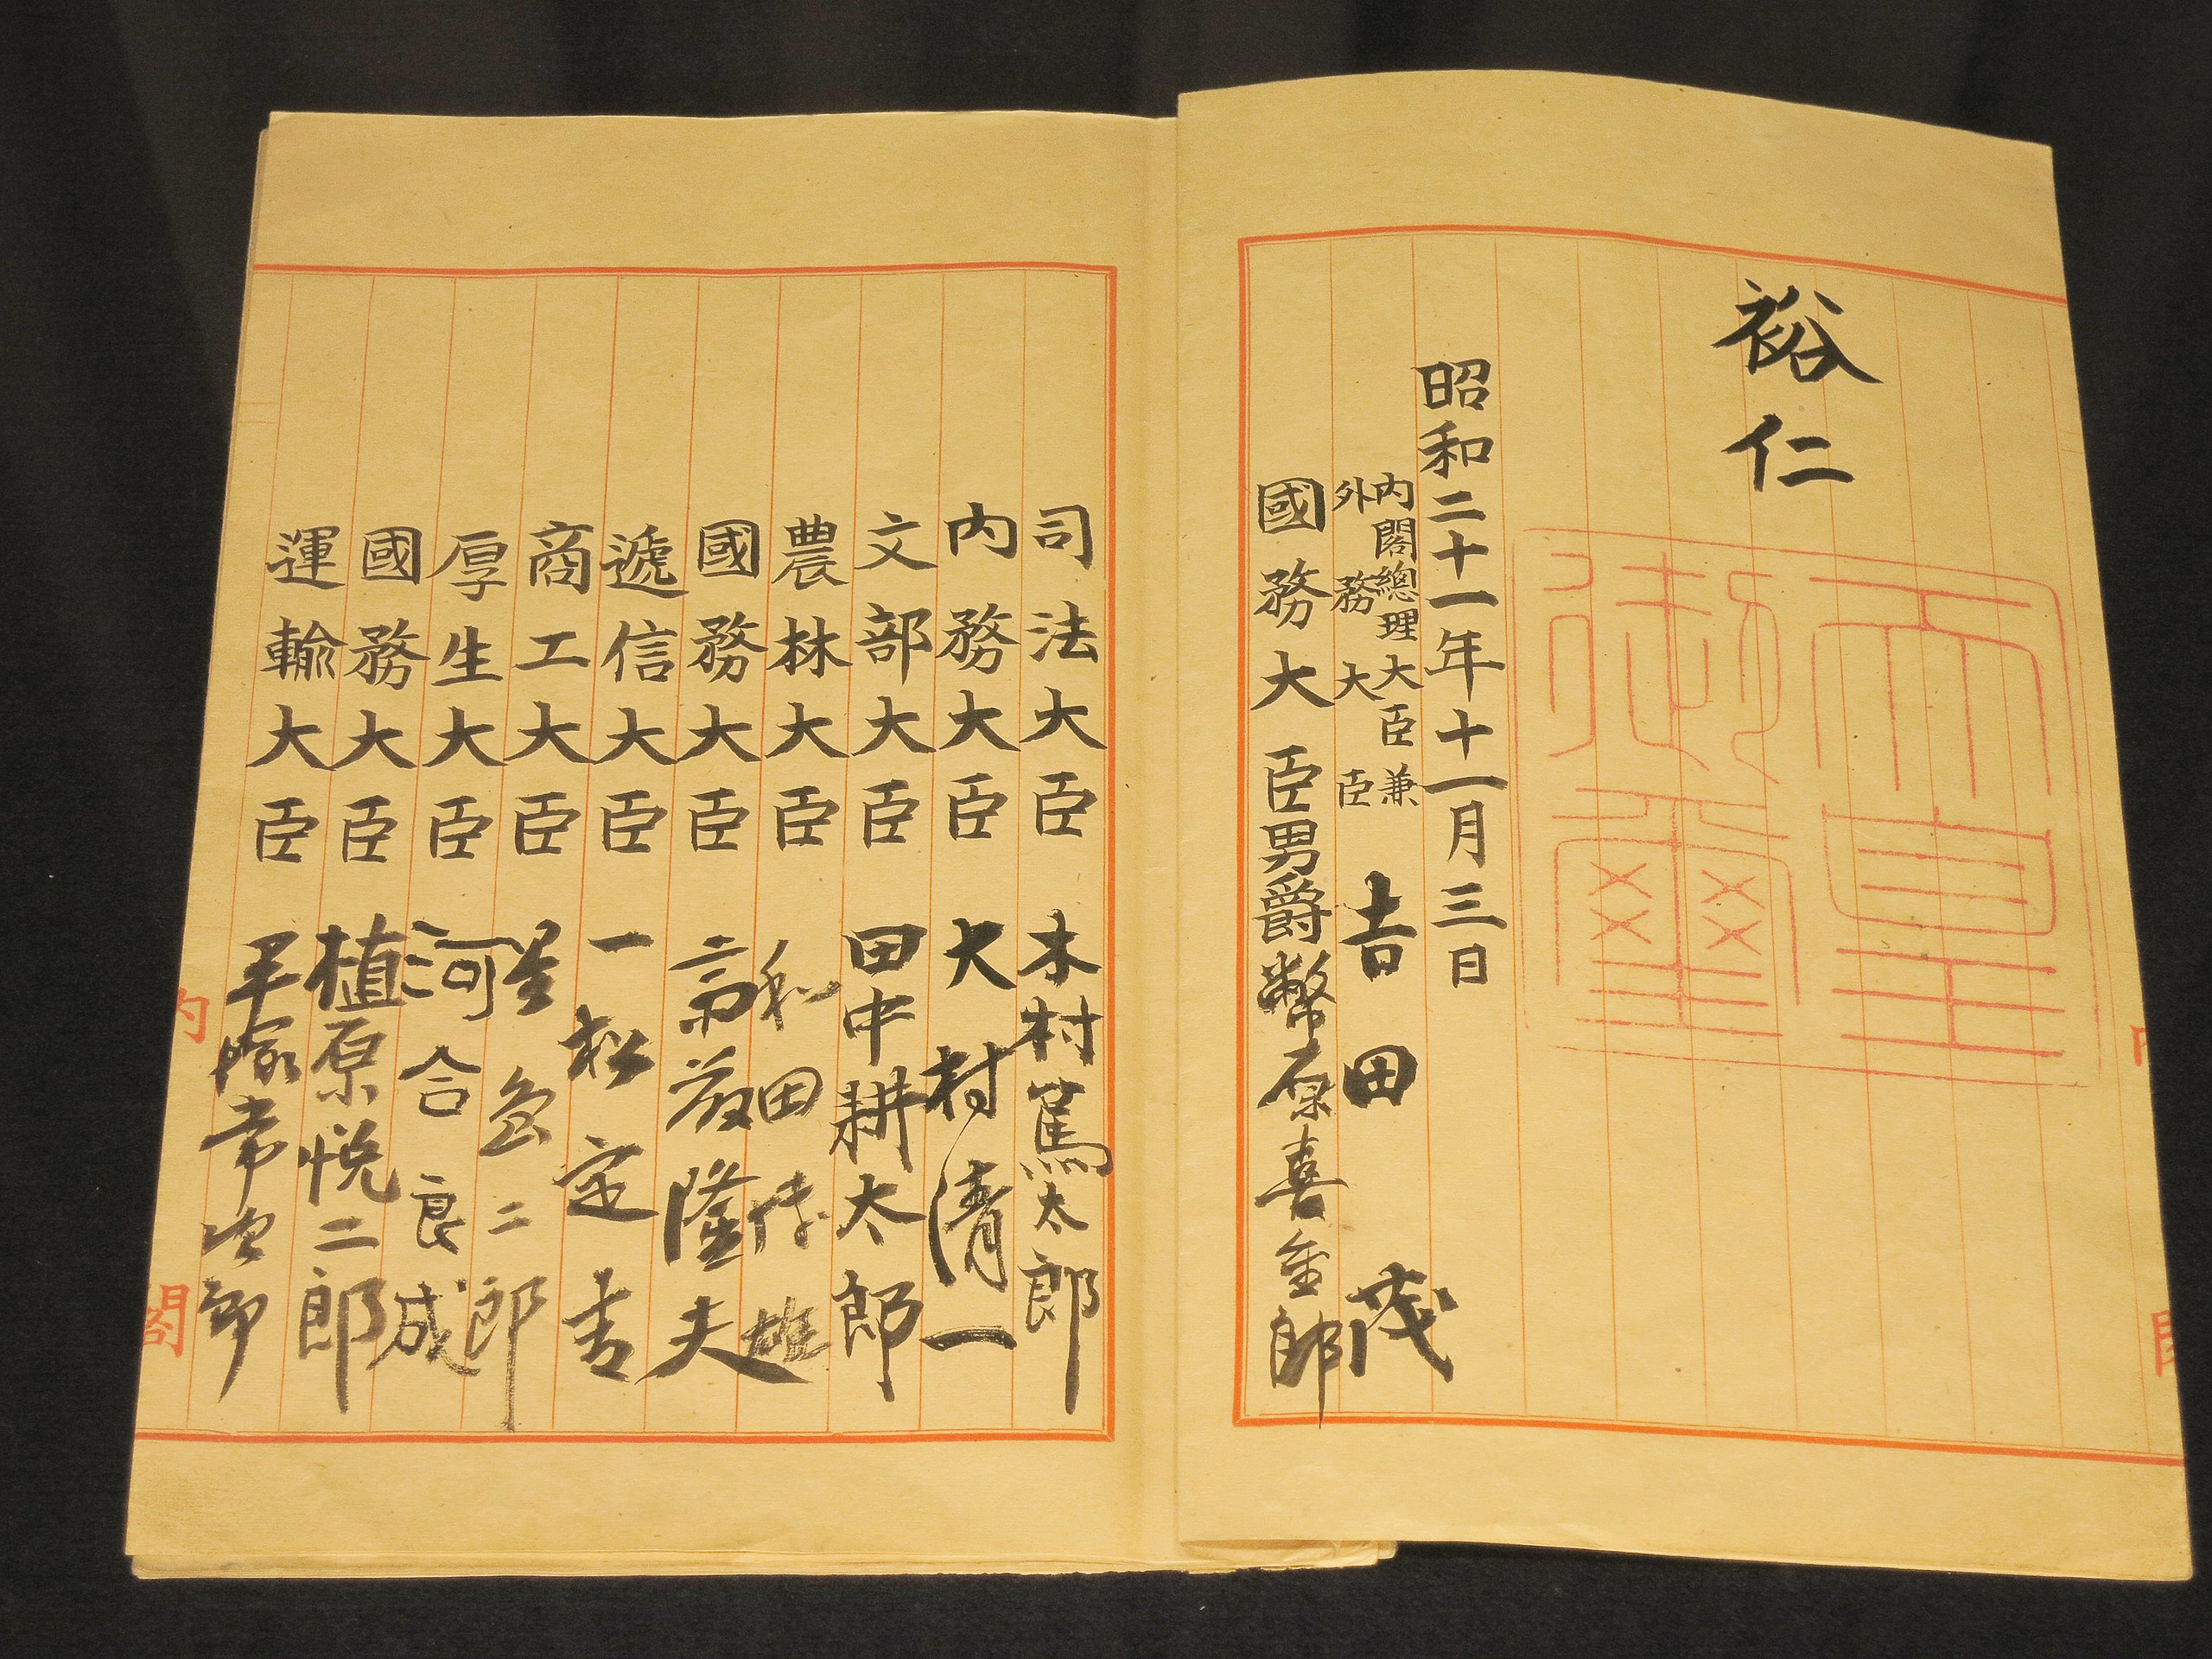 Die Ver­fas­sung wur­de von Kai­ser Hiro­hi­to (rechts oben, inkl. kai­ser­li­ches Sie­gel), Pre­mier­mi­nis­ter Yoshi­da Shi­ge­ru und den Kabi­netts­mit­glie­dern unter­zeich­net.